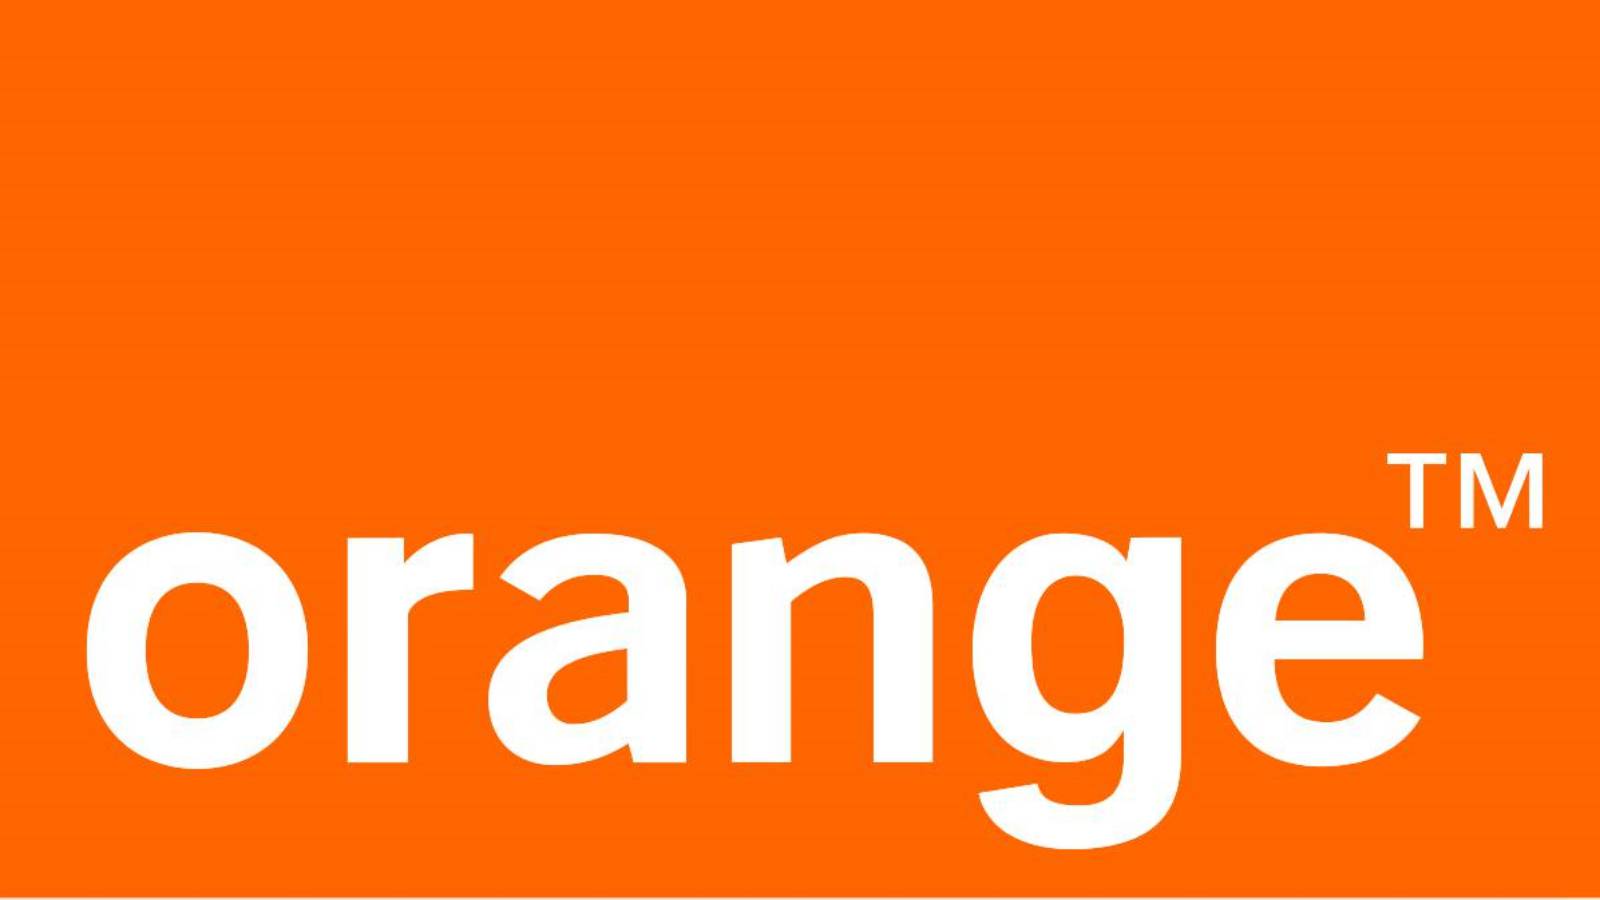 Atlas pomarańczowy